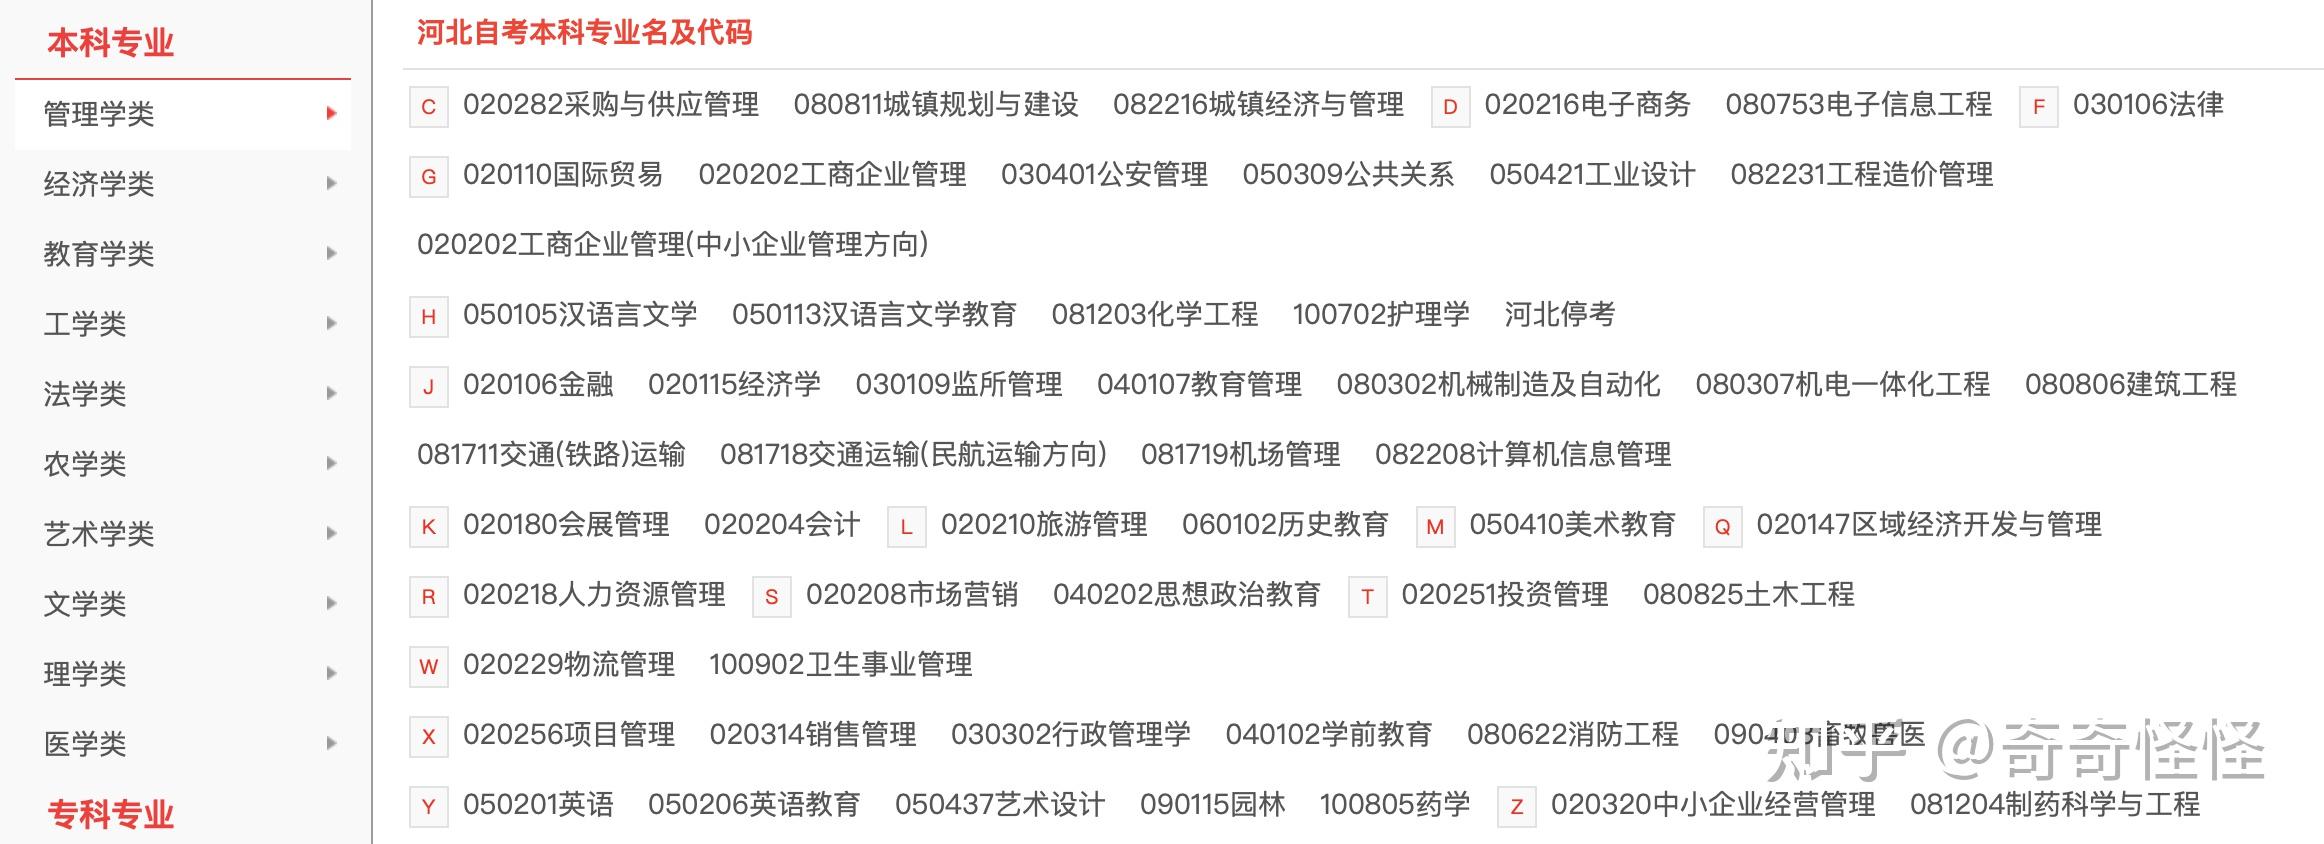 河北省自考注册报名报考流程详解+备考资料 - 知乎